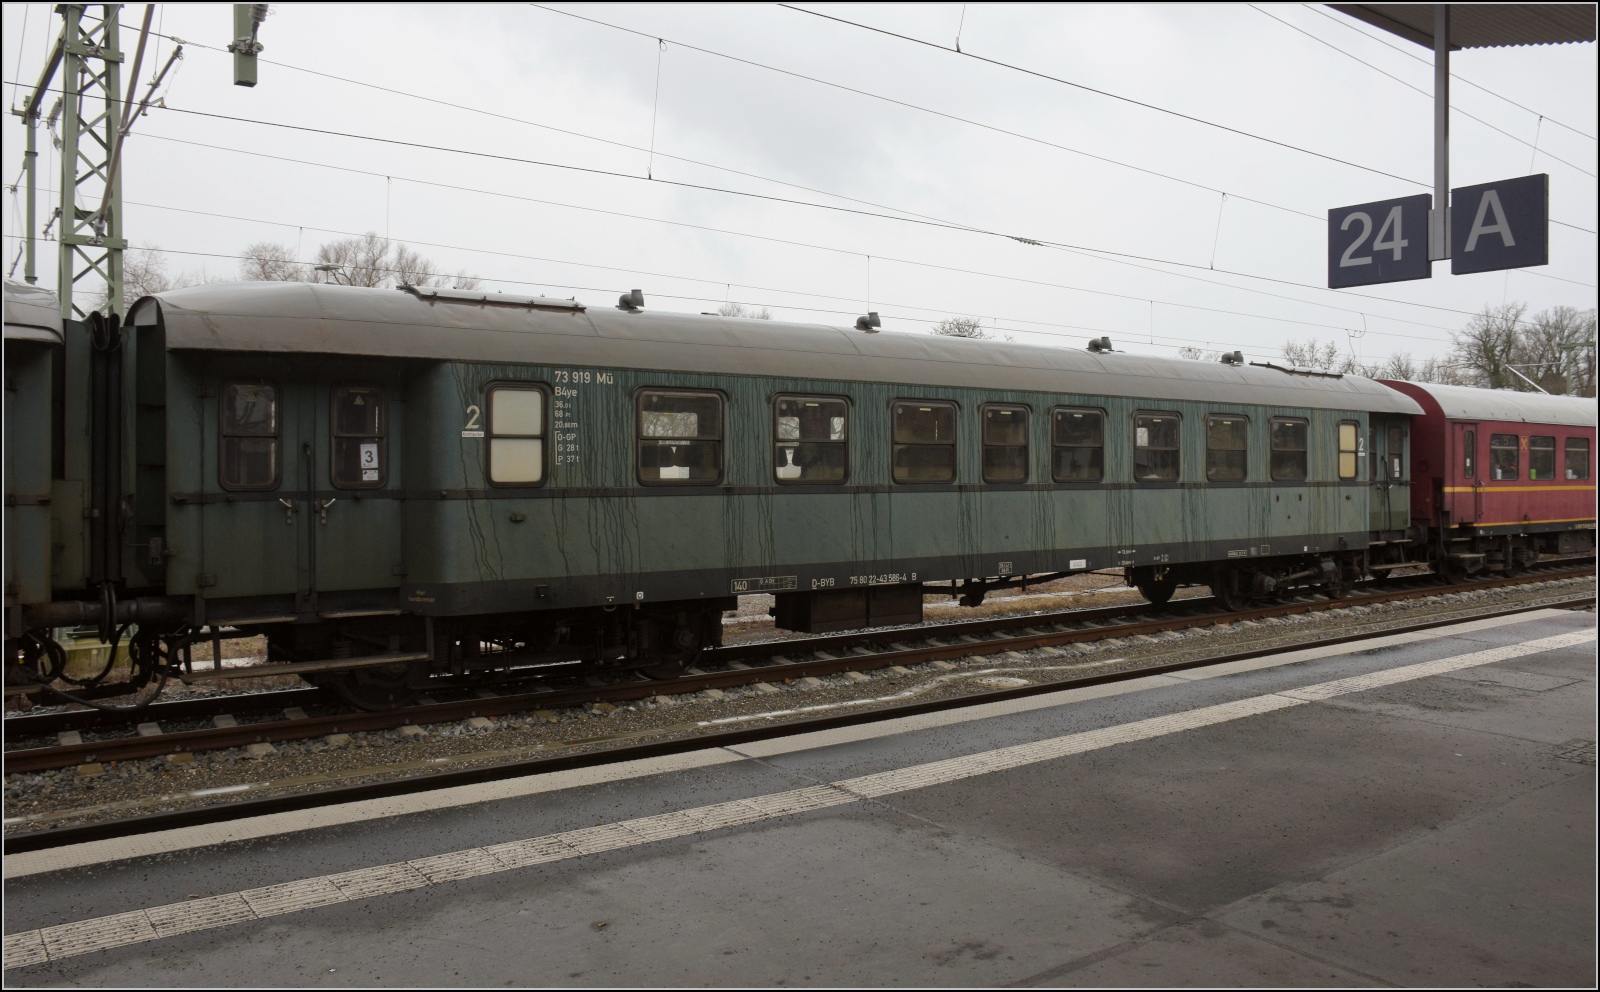 Geschweißter Eilzugwagen B4ye mit der Nummer 73 919 Mü. UIC-Nummer 75 80 22-43 586-4 D-BYB. Lindau Reutin, Februar 2023.